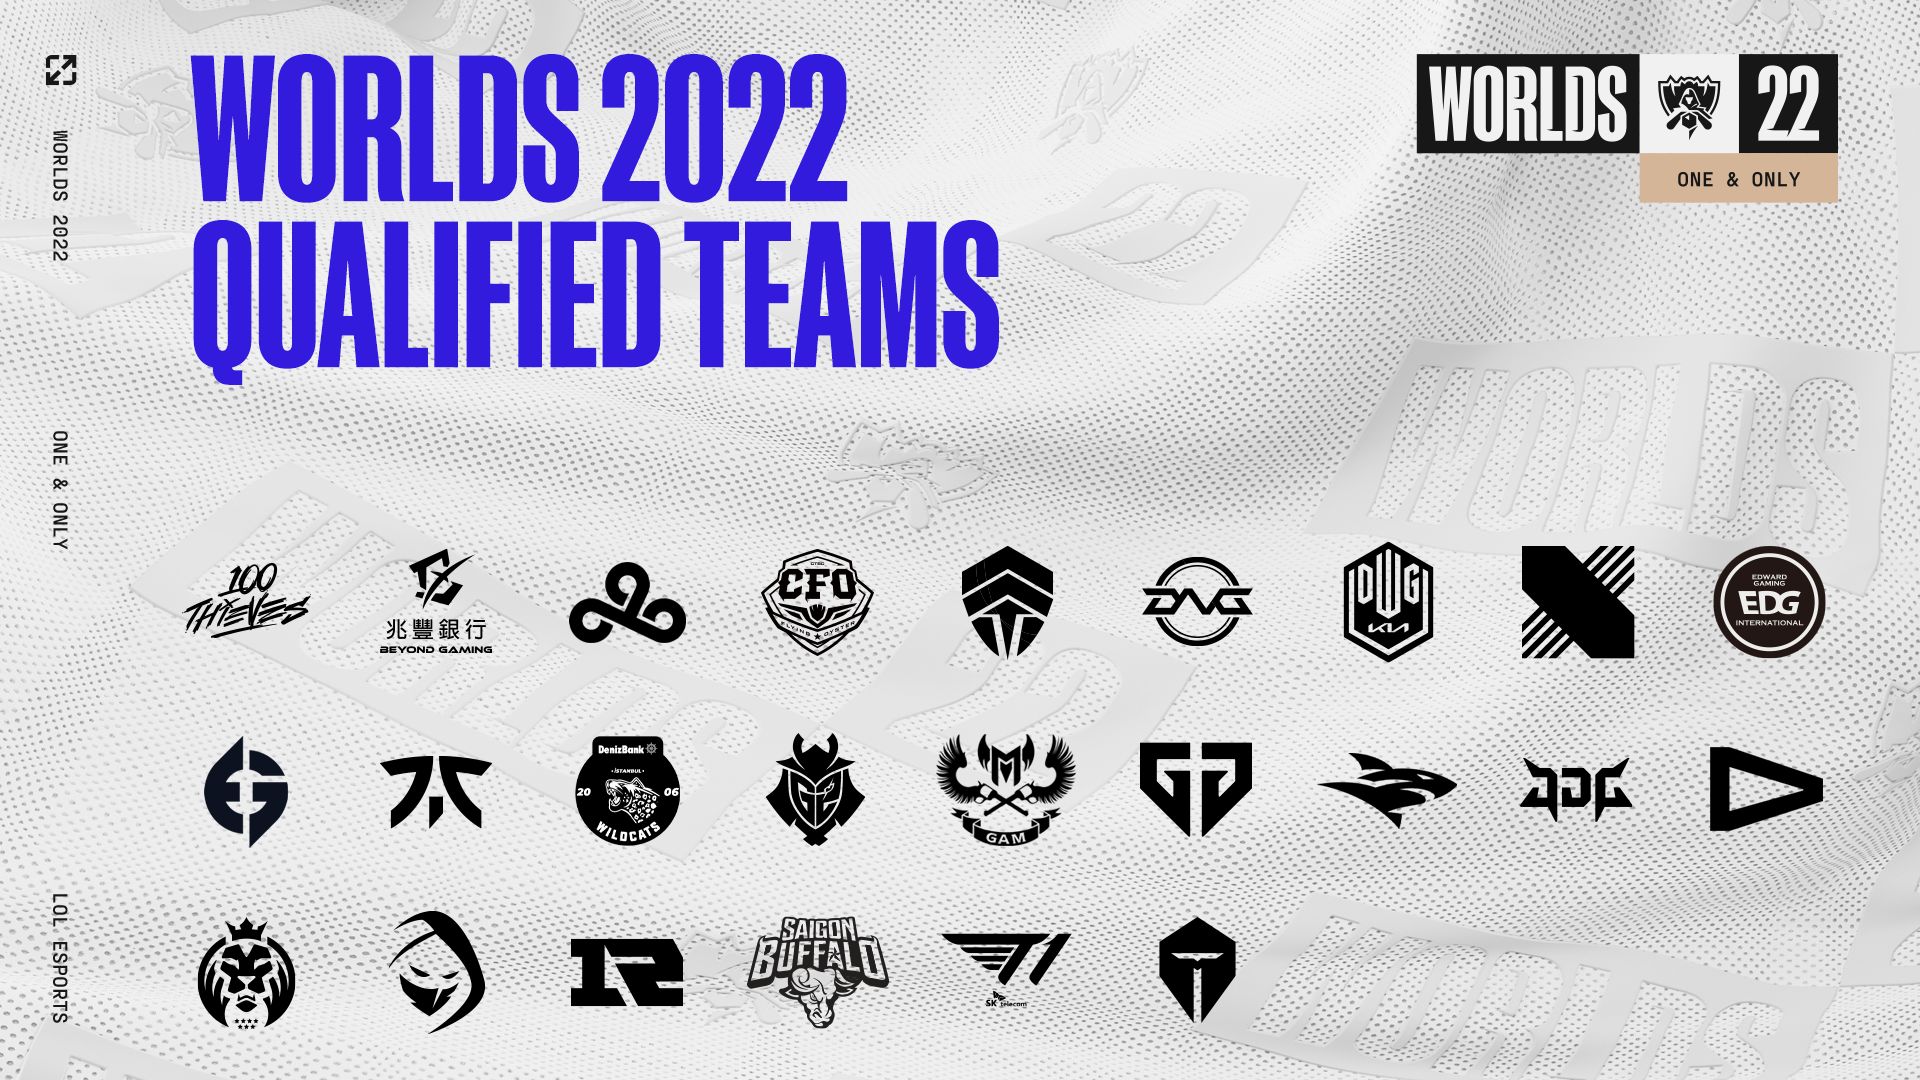 Les équipes qualifiées pour les Worlds 2022.